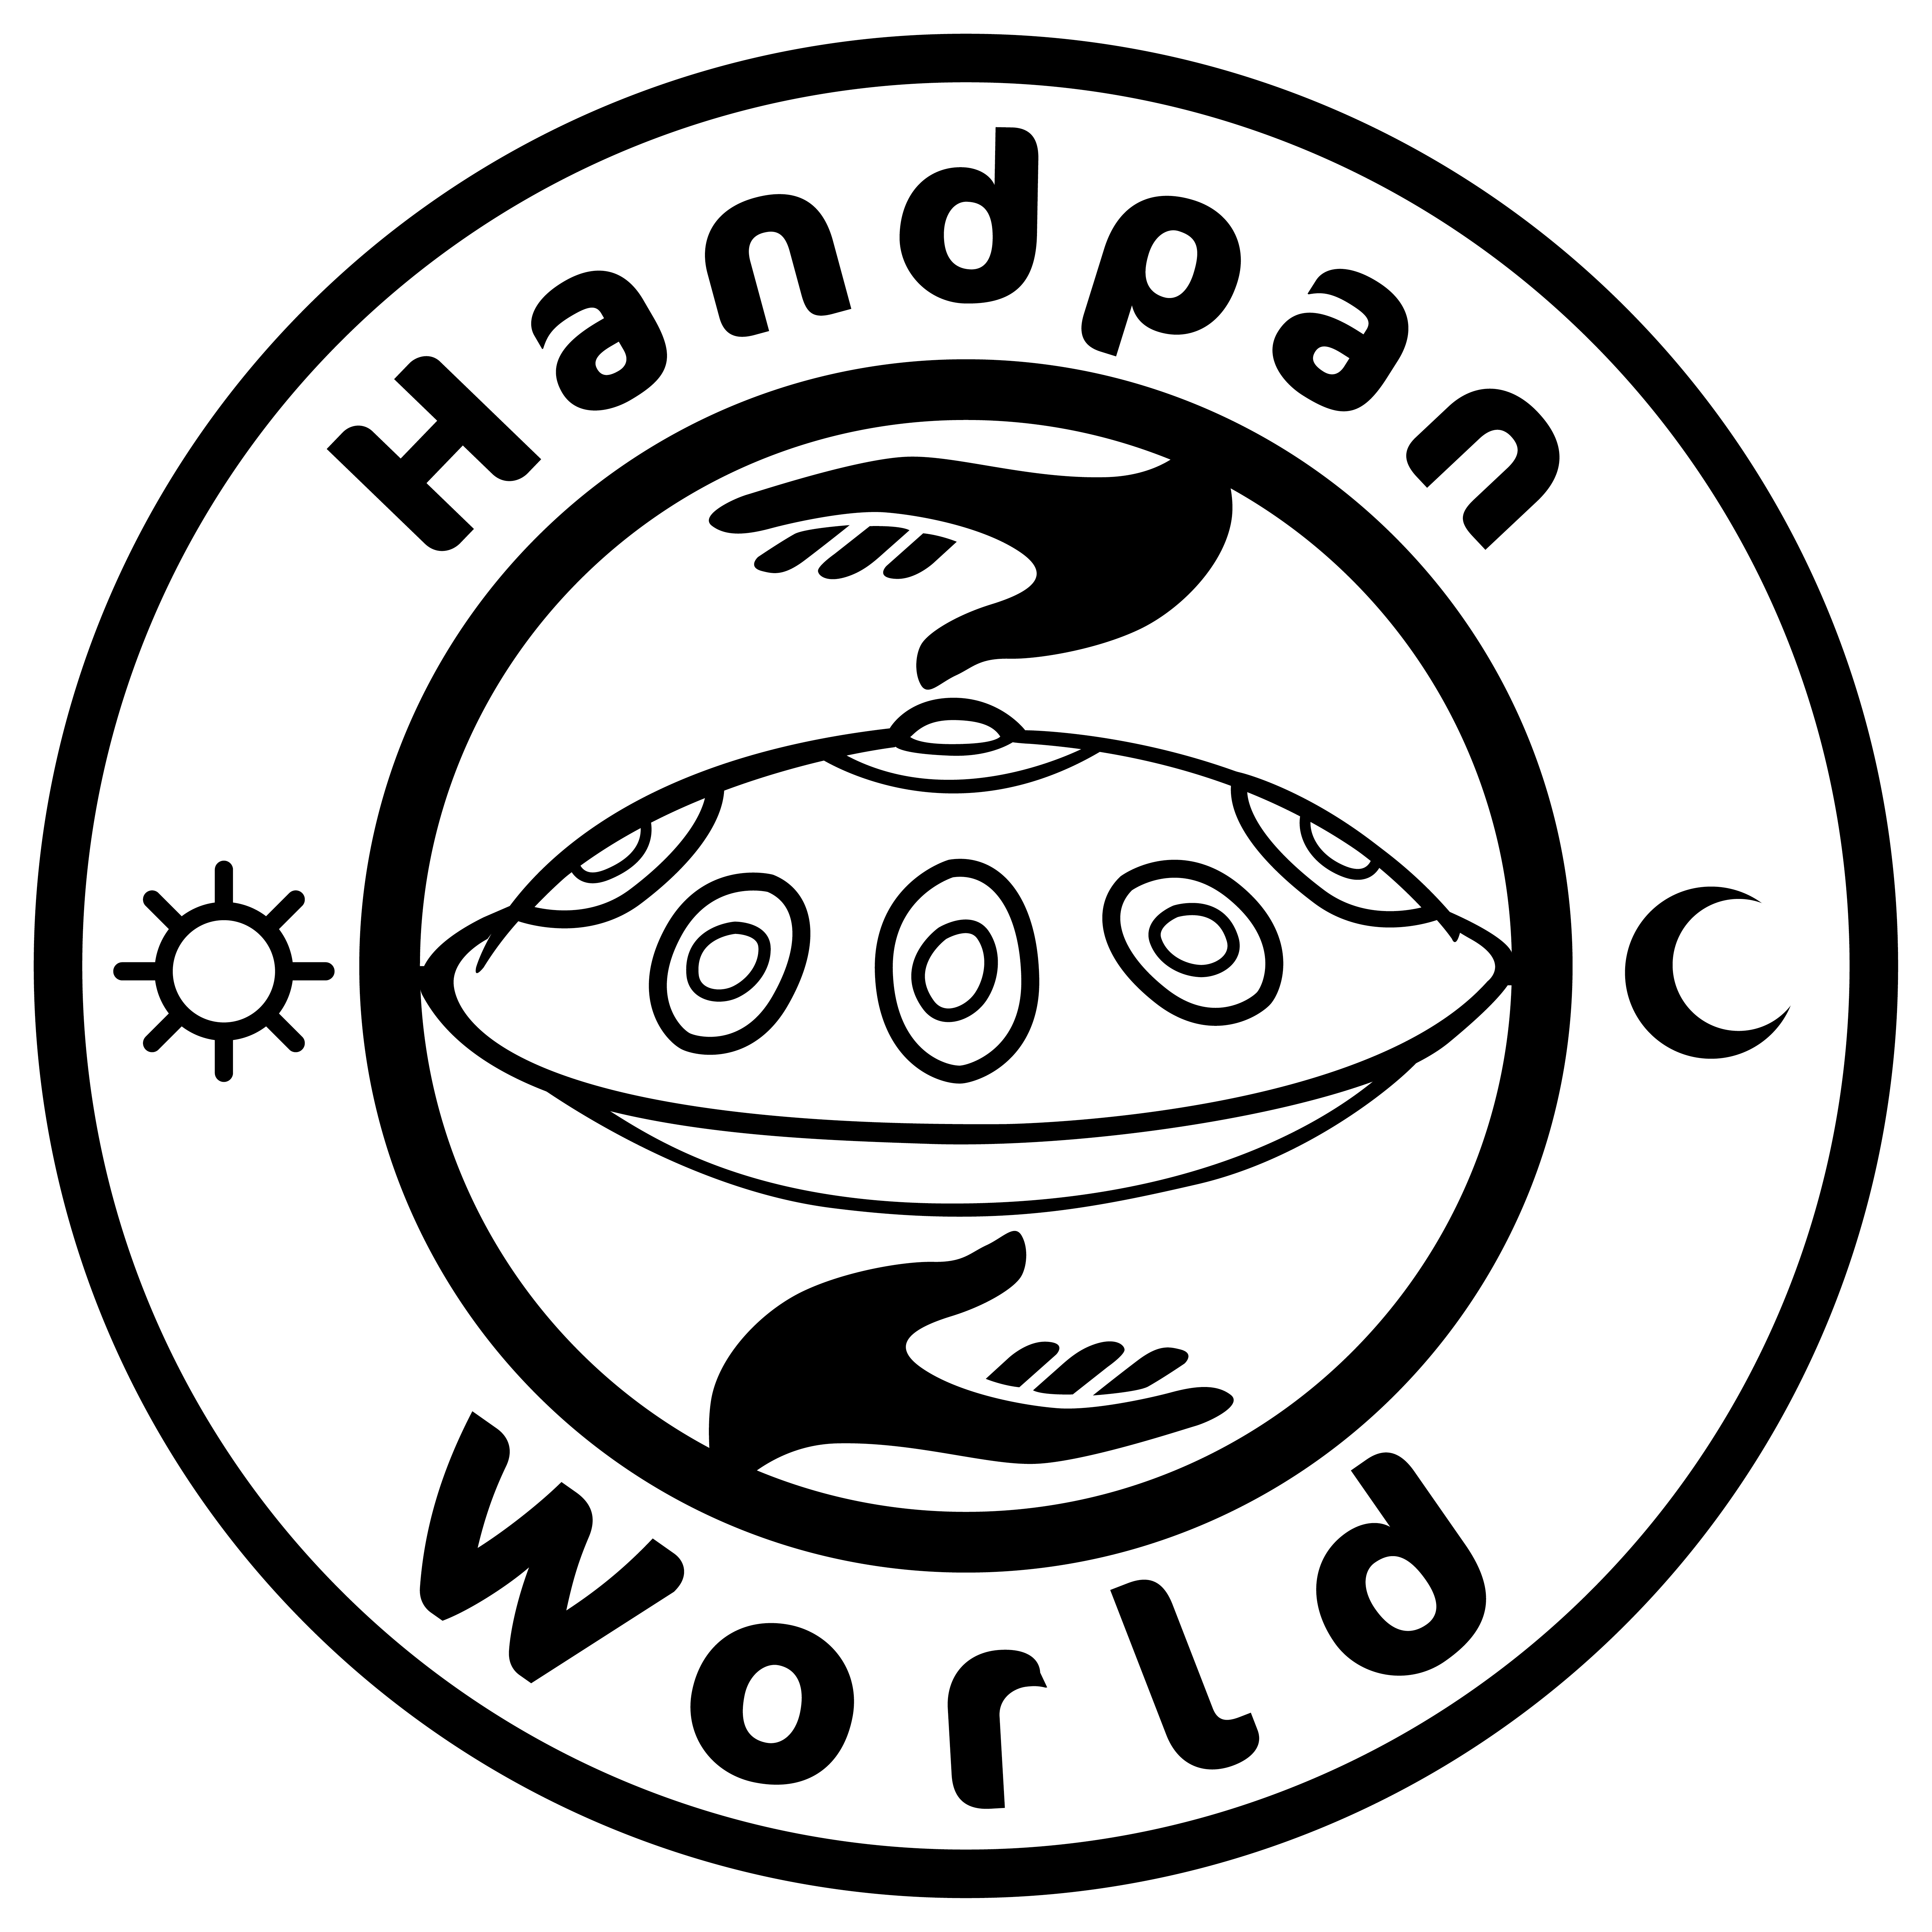 Handpanworld Neuperlach Showroom